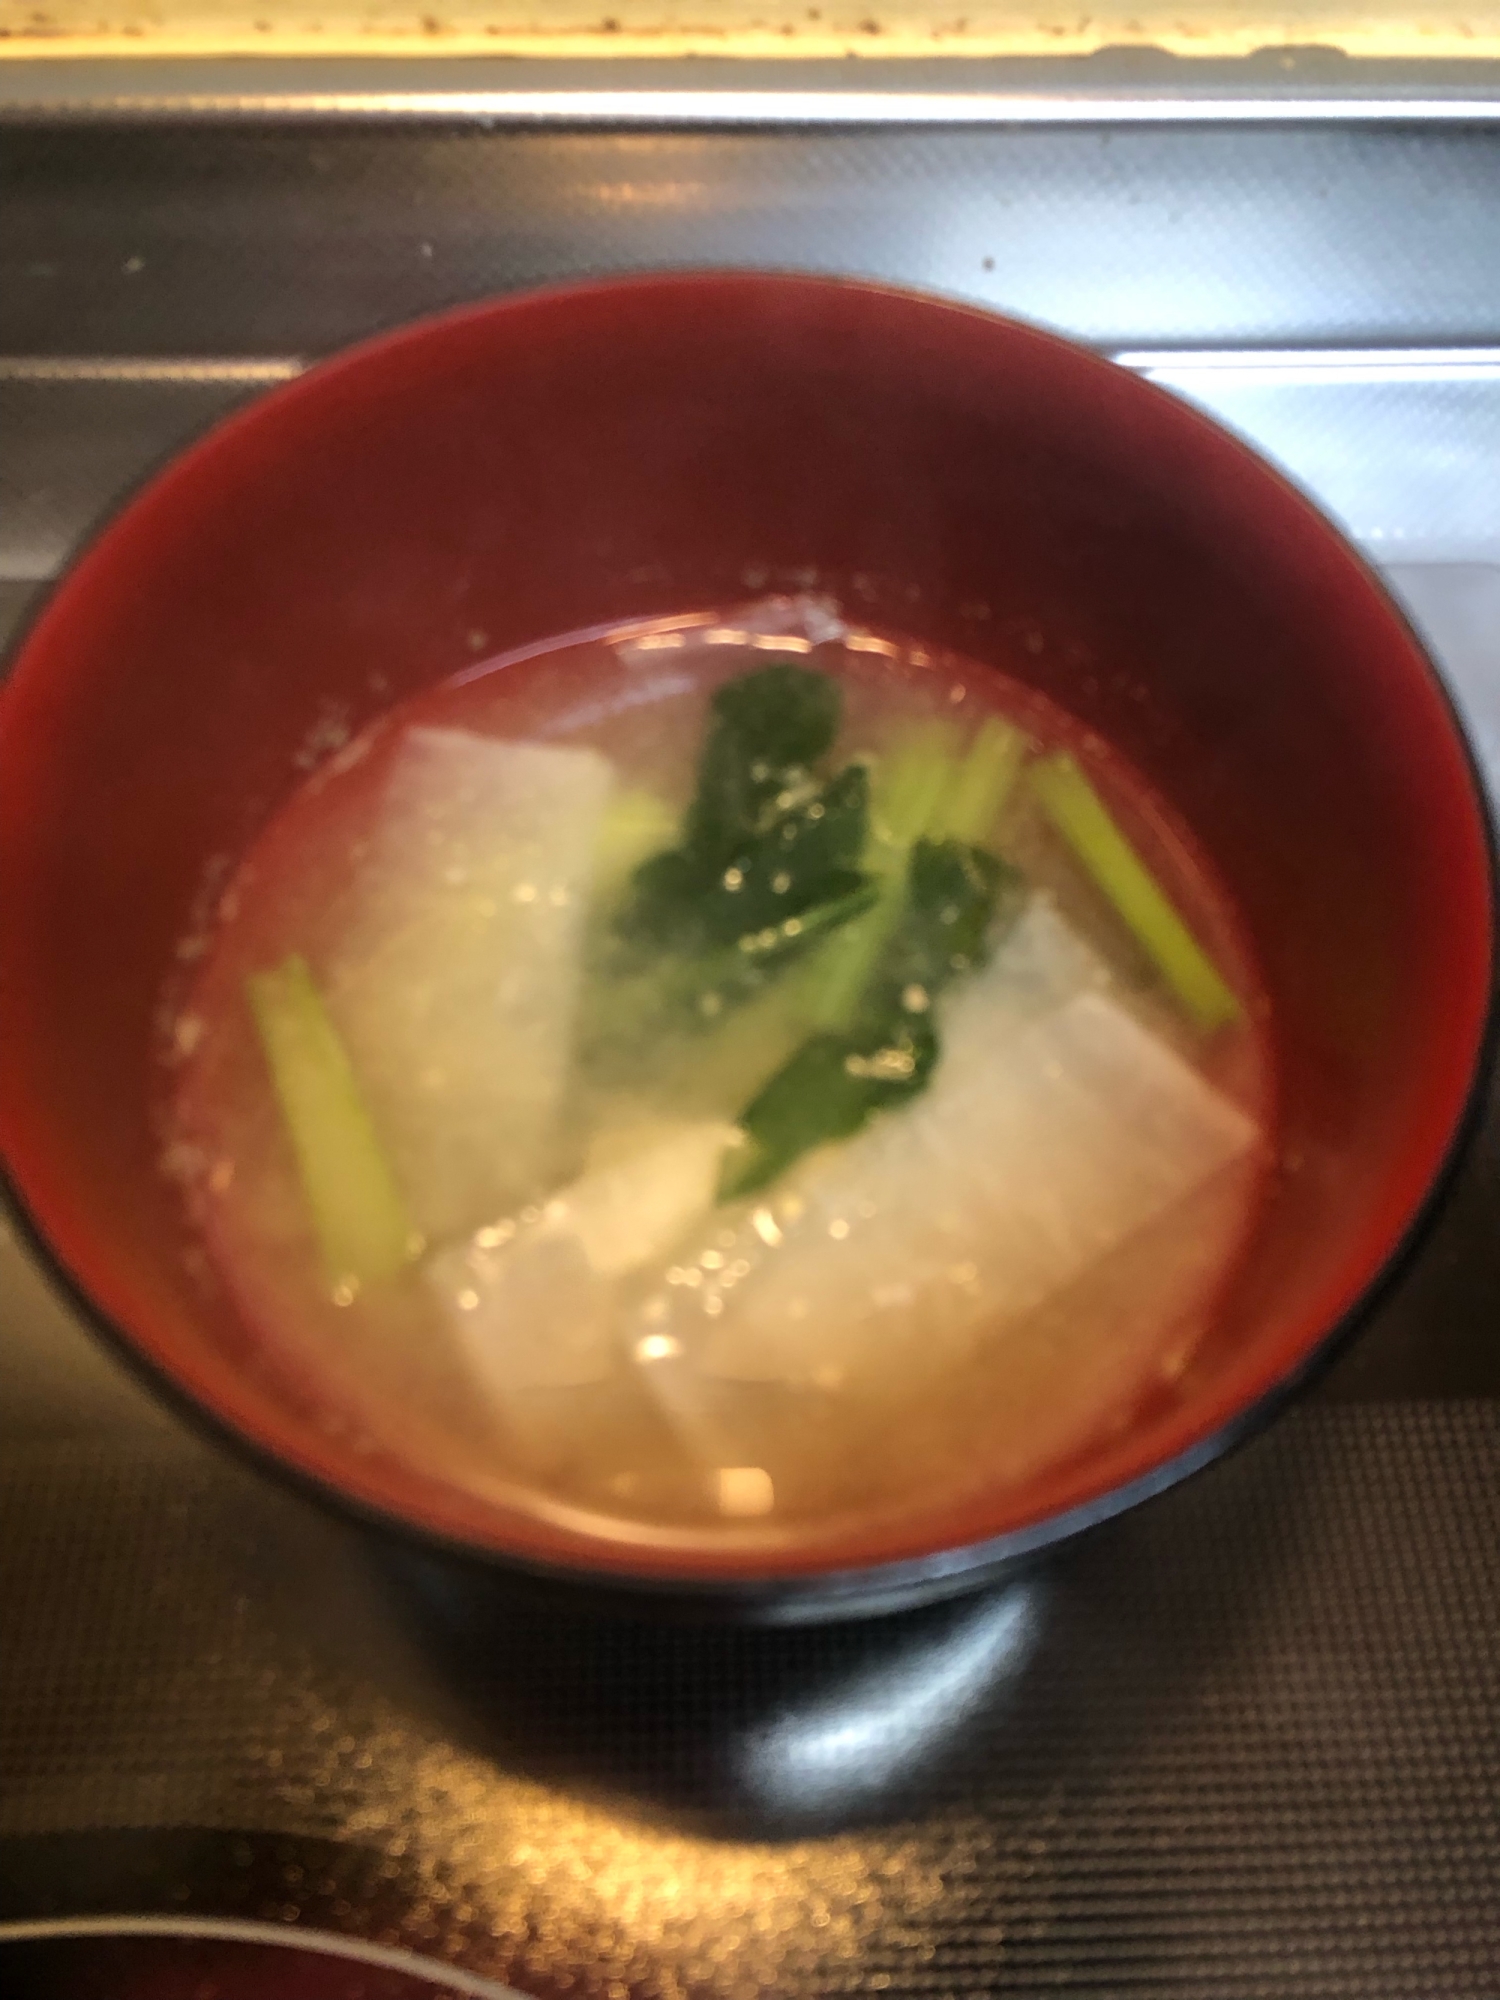 大根と小松菜のお味噌汁^_^